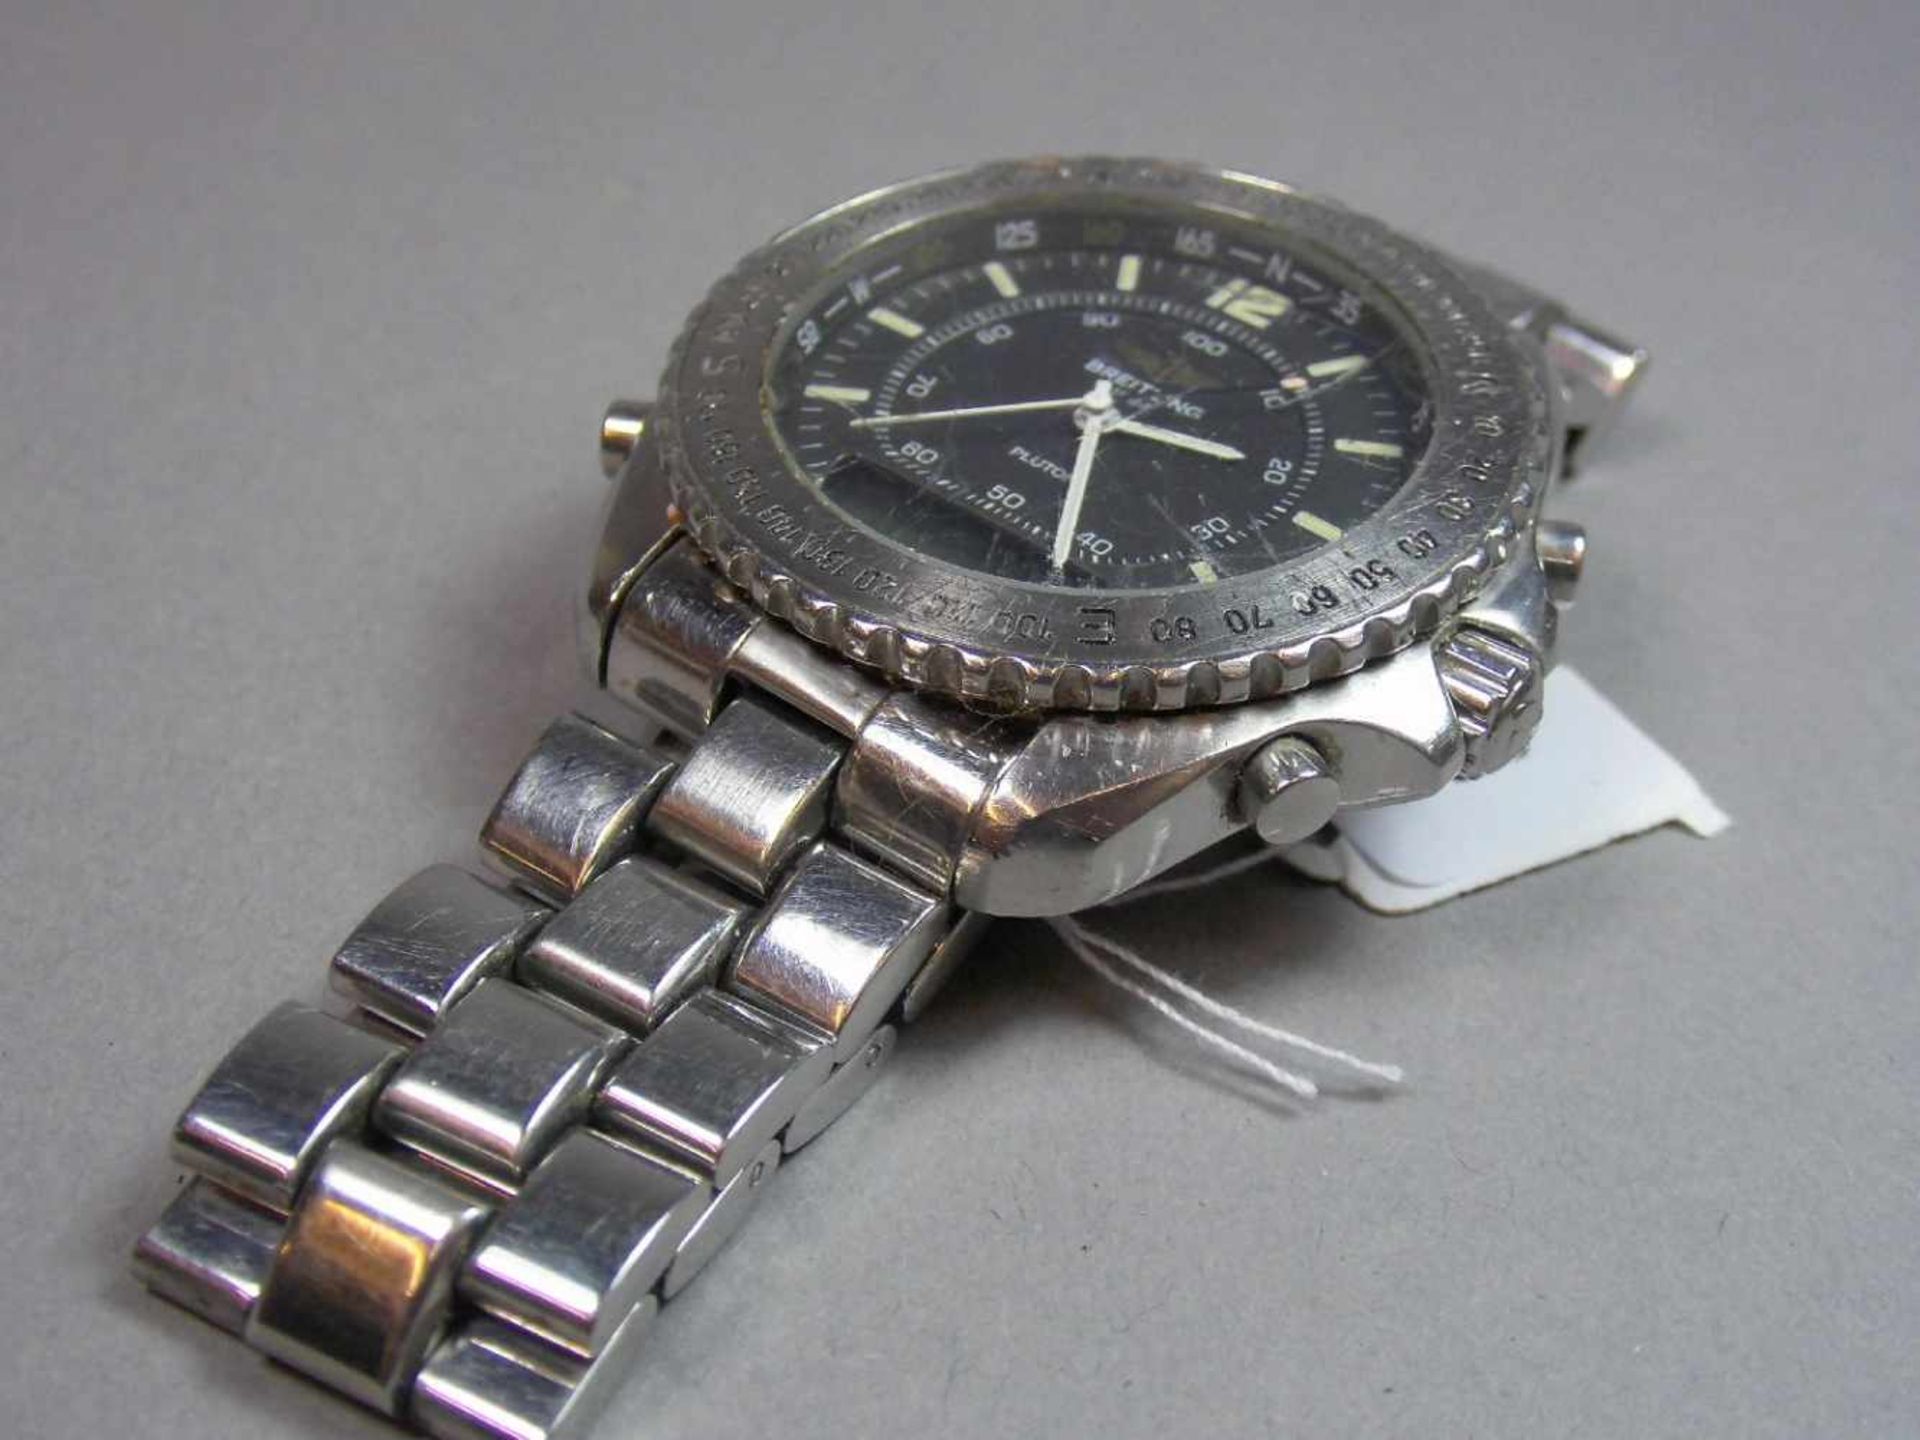 BREITLING "PLUTON" ARMBANDUHR / wristwatch, Quarz-Uhr, Schweiz. Stahlgehäuse mit drehbarer - Bild 6 aus 9